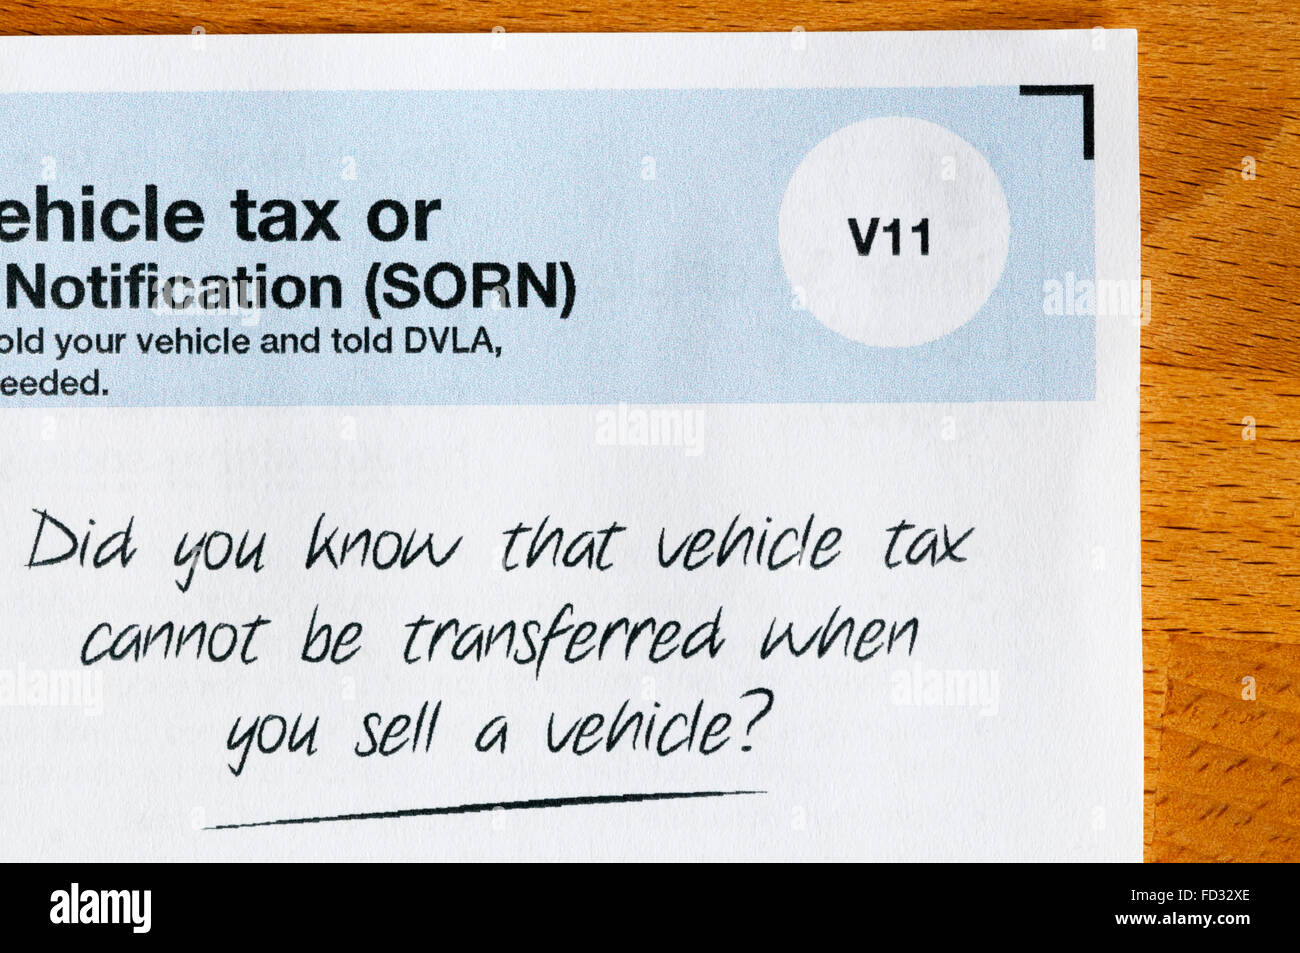 Eine Erinnerung aus der DVLA, Kfz-Steuer ist nicht übertragbar, wenn ein Fahrzeug verkauft wird. Stockfoto